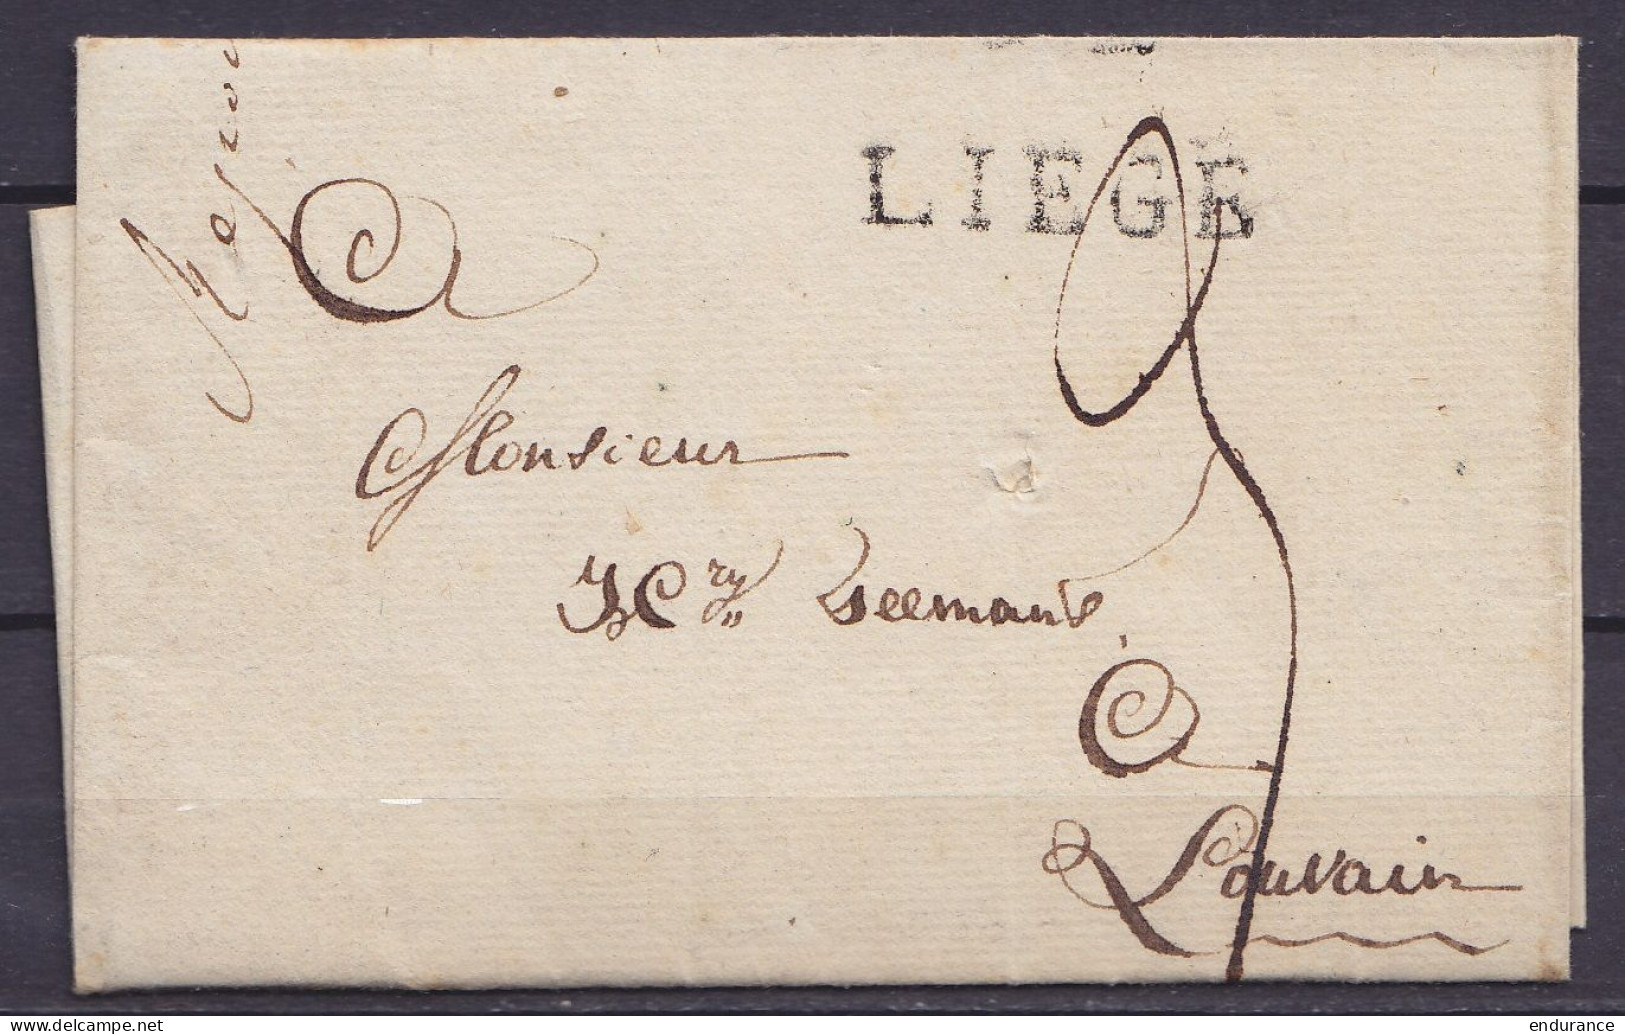 LSC (sans Texte) De LIEGE 29 Juillet 1815 Pour LOUVAIN - Griffe "LIEGE" - Port "3" - 1815-1830 (Dutch Period)